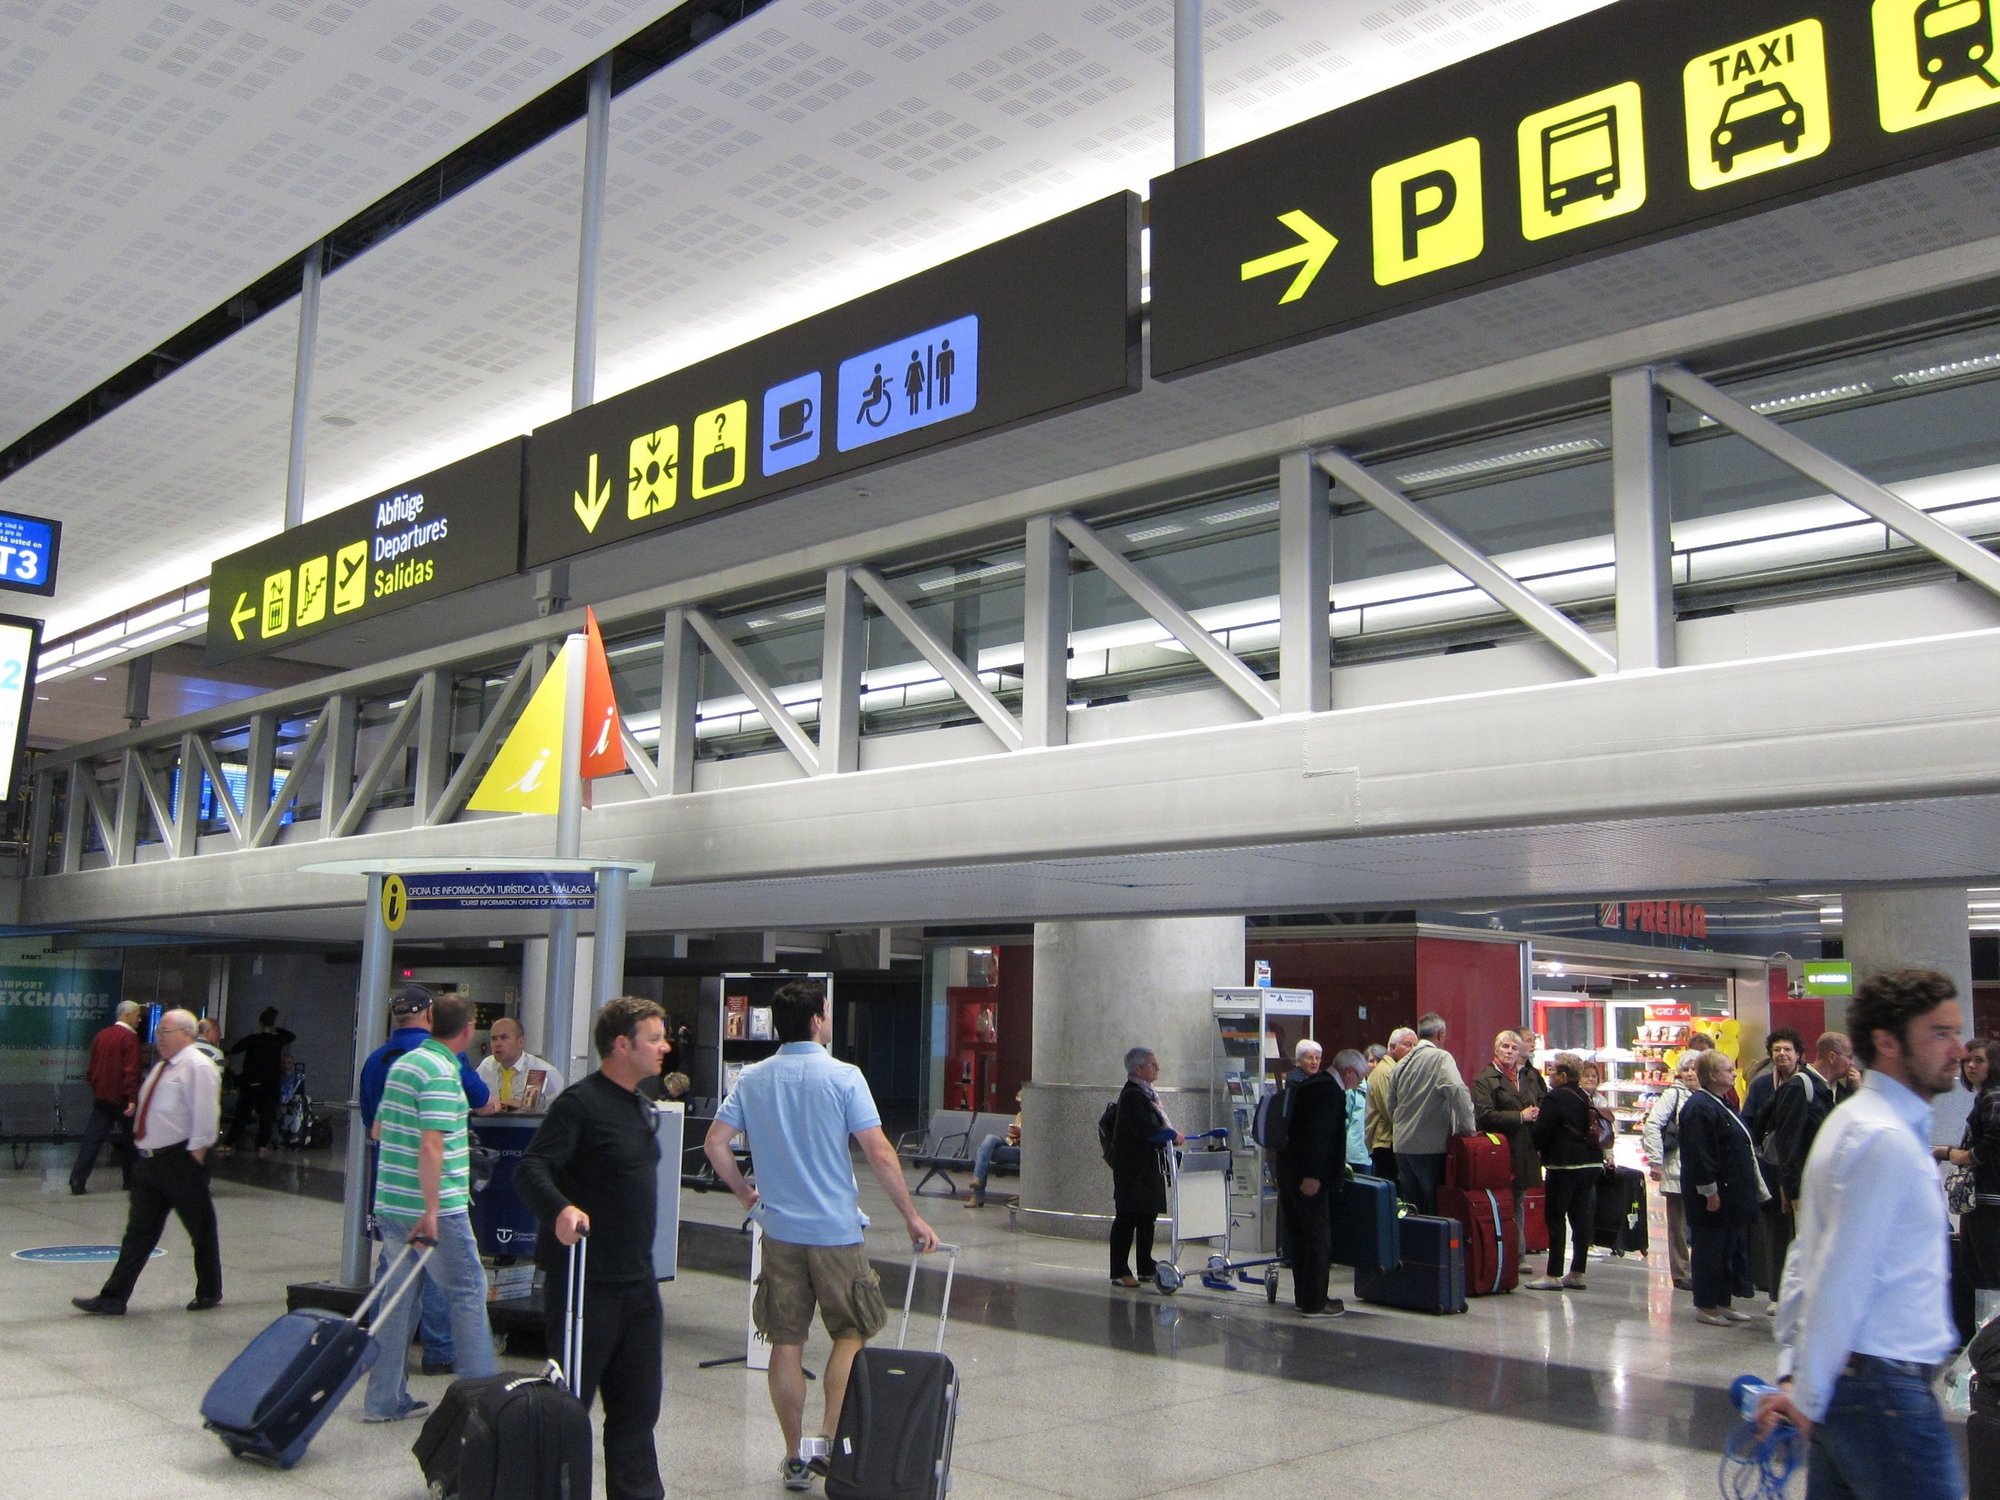 Los aeropuertos andaluces registran 20,47 millones de pasajeros en 2011, un 7,16% más que el año anterior